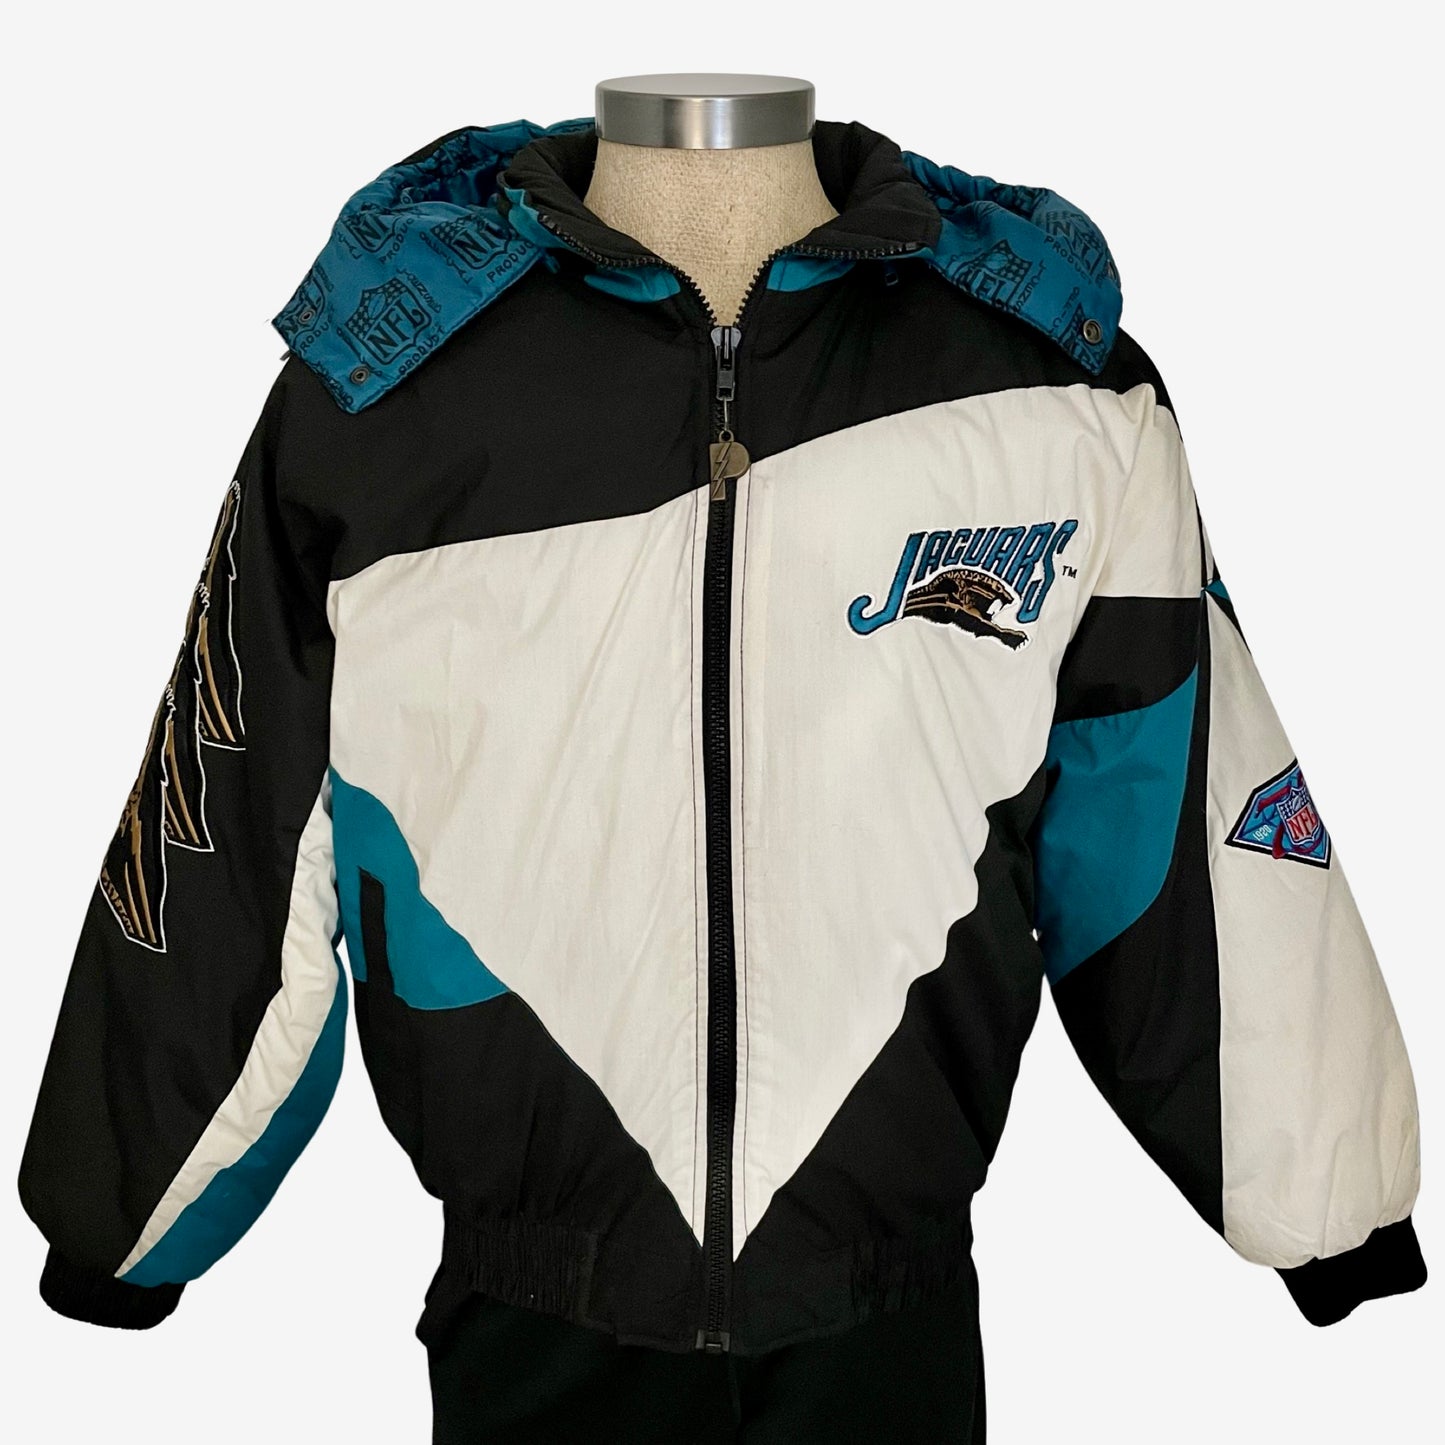 Vintage Jacksonville Jaguars banned logo PRO PLAYER jacket size LARGE